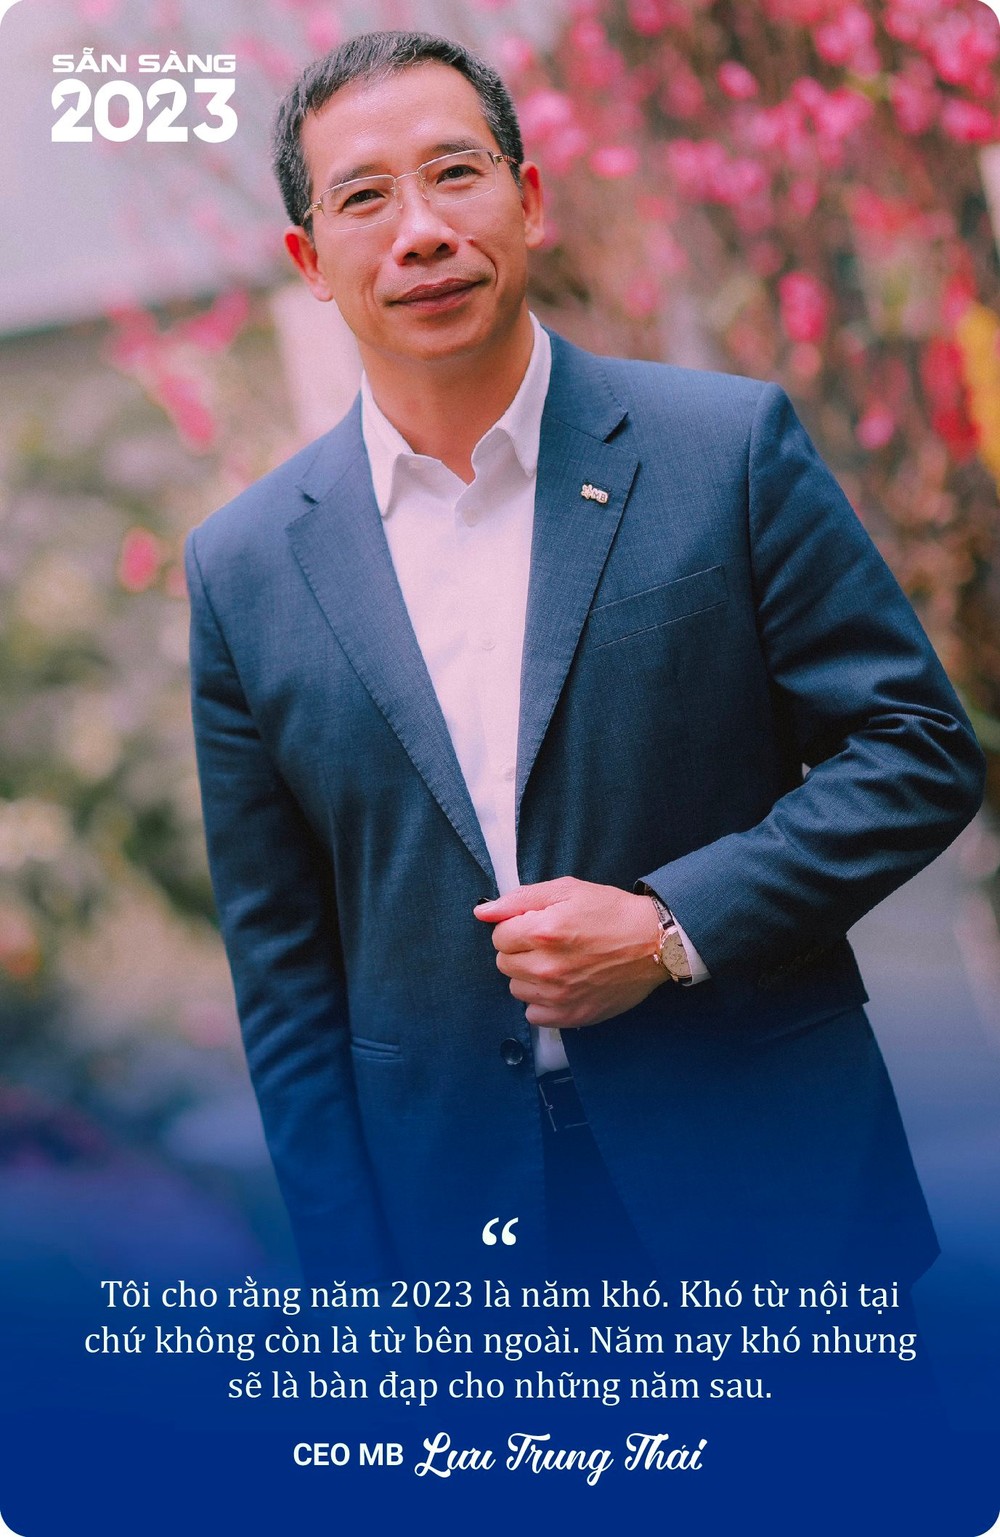 CEO MB Lưu Trung Thái: 2023 sẽ là năm khó, mong muốn lớn nhất của tôi là kinh tế tăng trưởng ổn định - Ảnh 7.